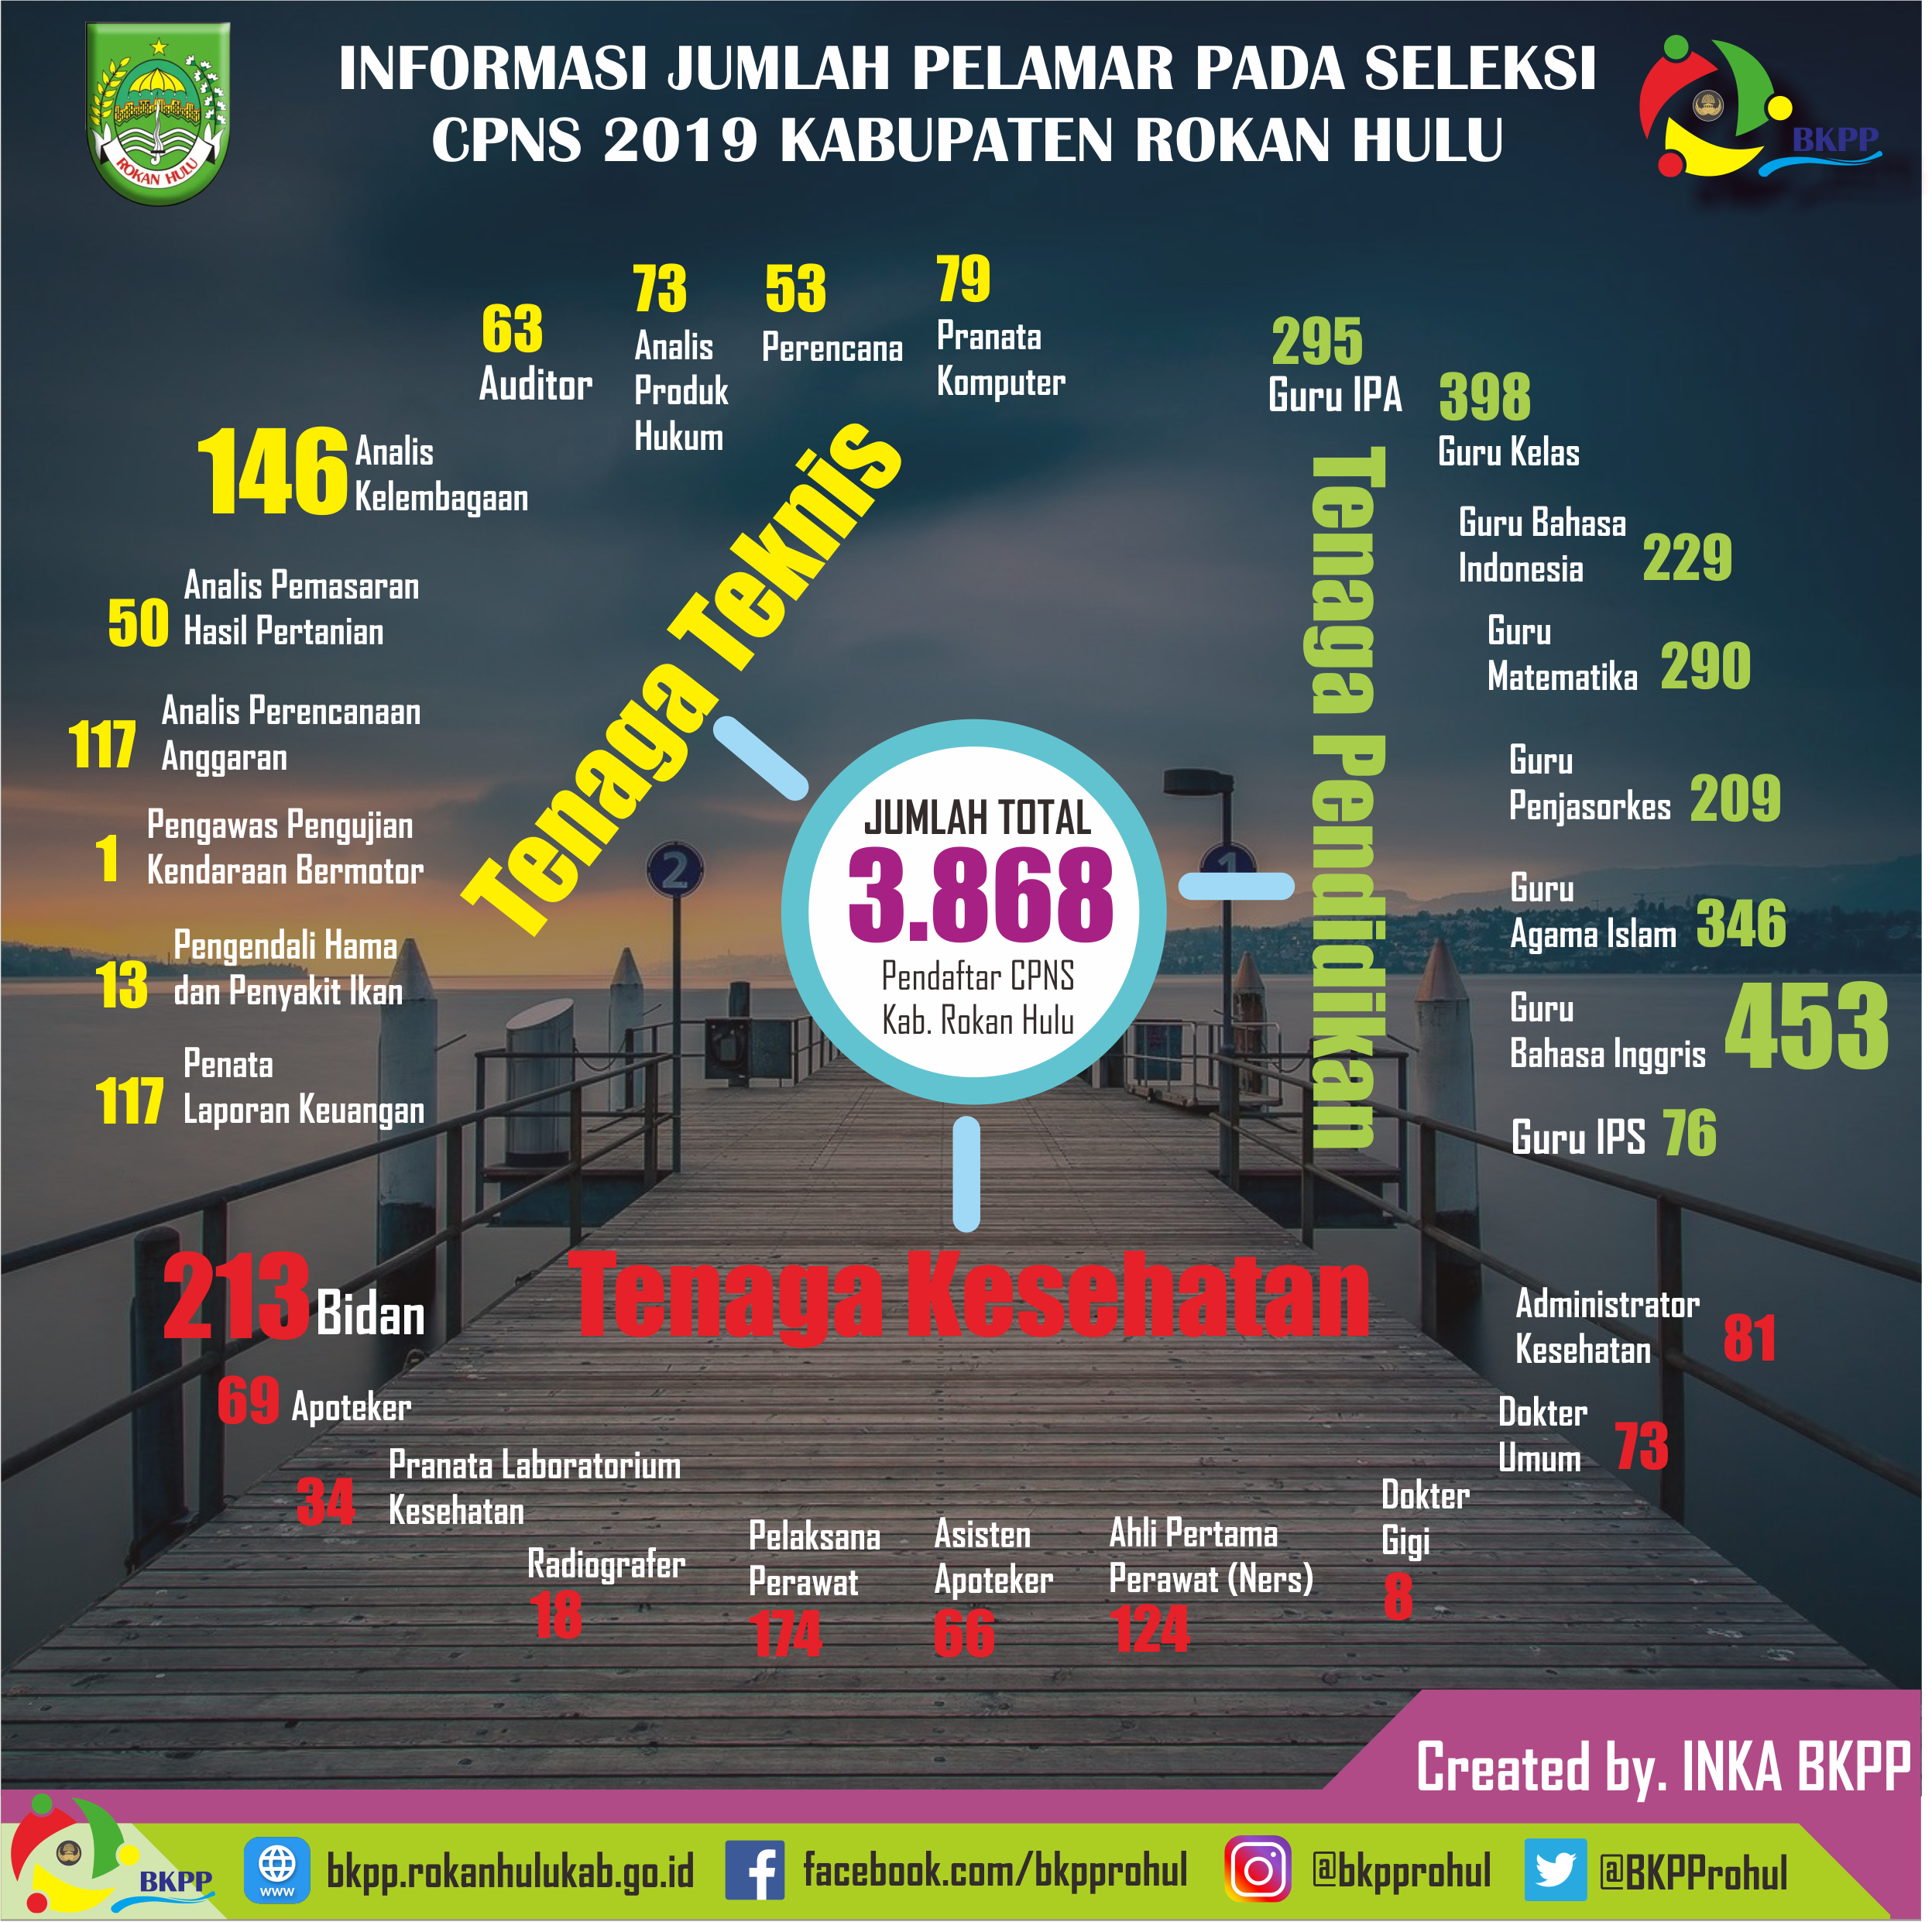 Informasi Jumlah Pelamar Pada Seleksi CPNS 2019 Kabupaten Rokan Hulu